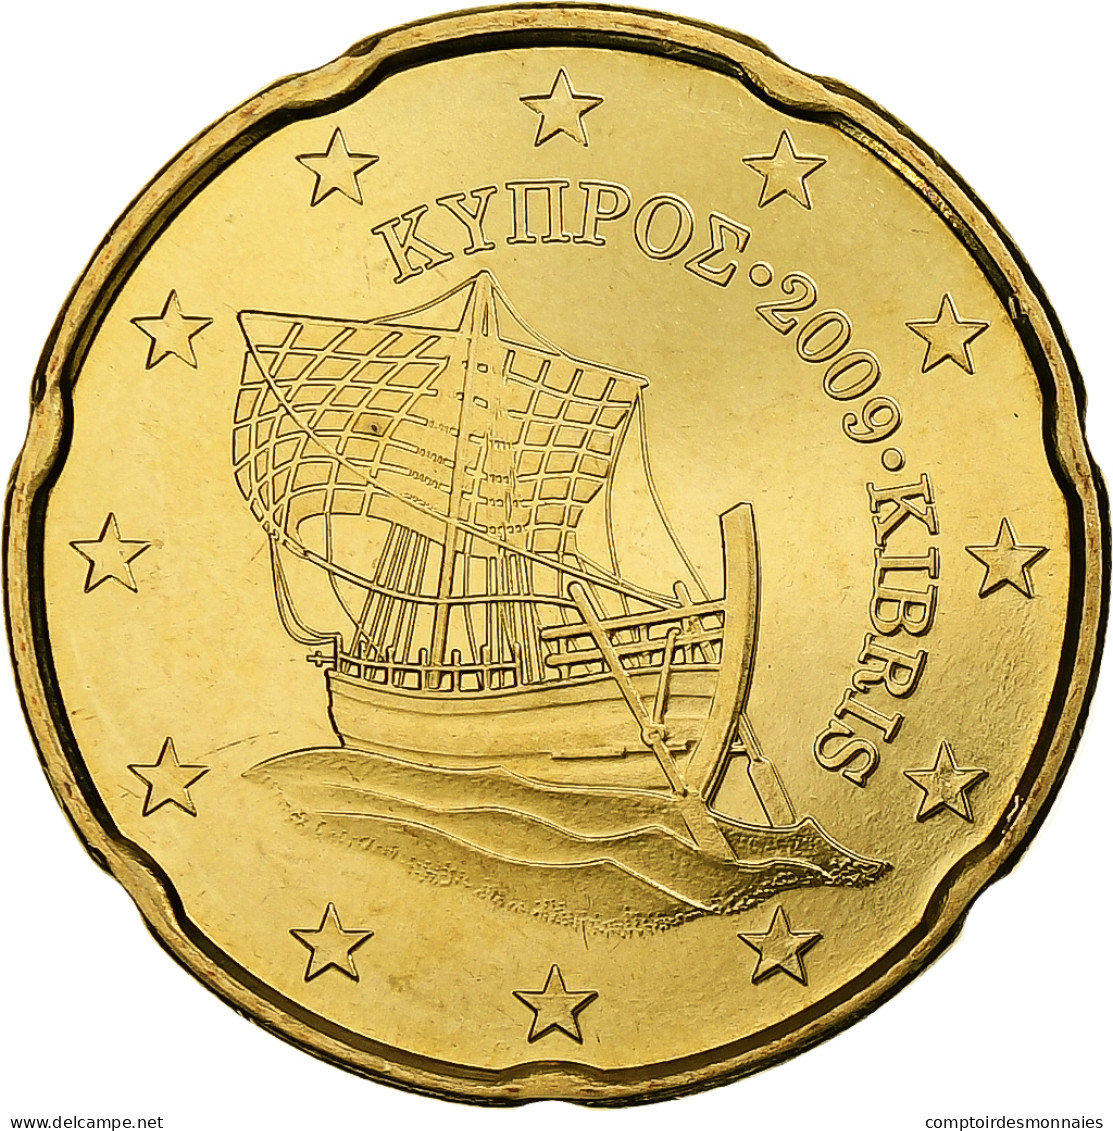 Chypre, 20 Euro Cent, 2009, Laiton, FDC, KM:82 - Chypre